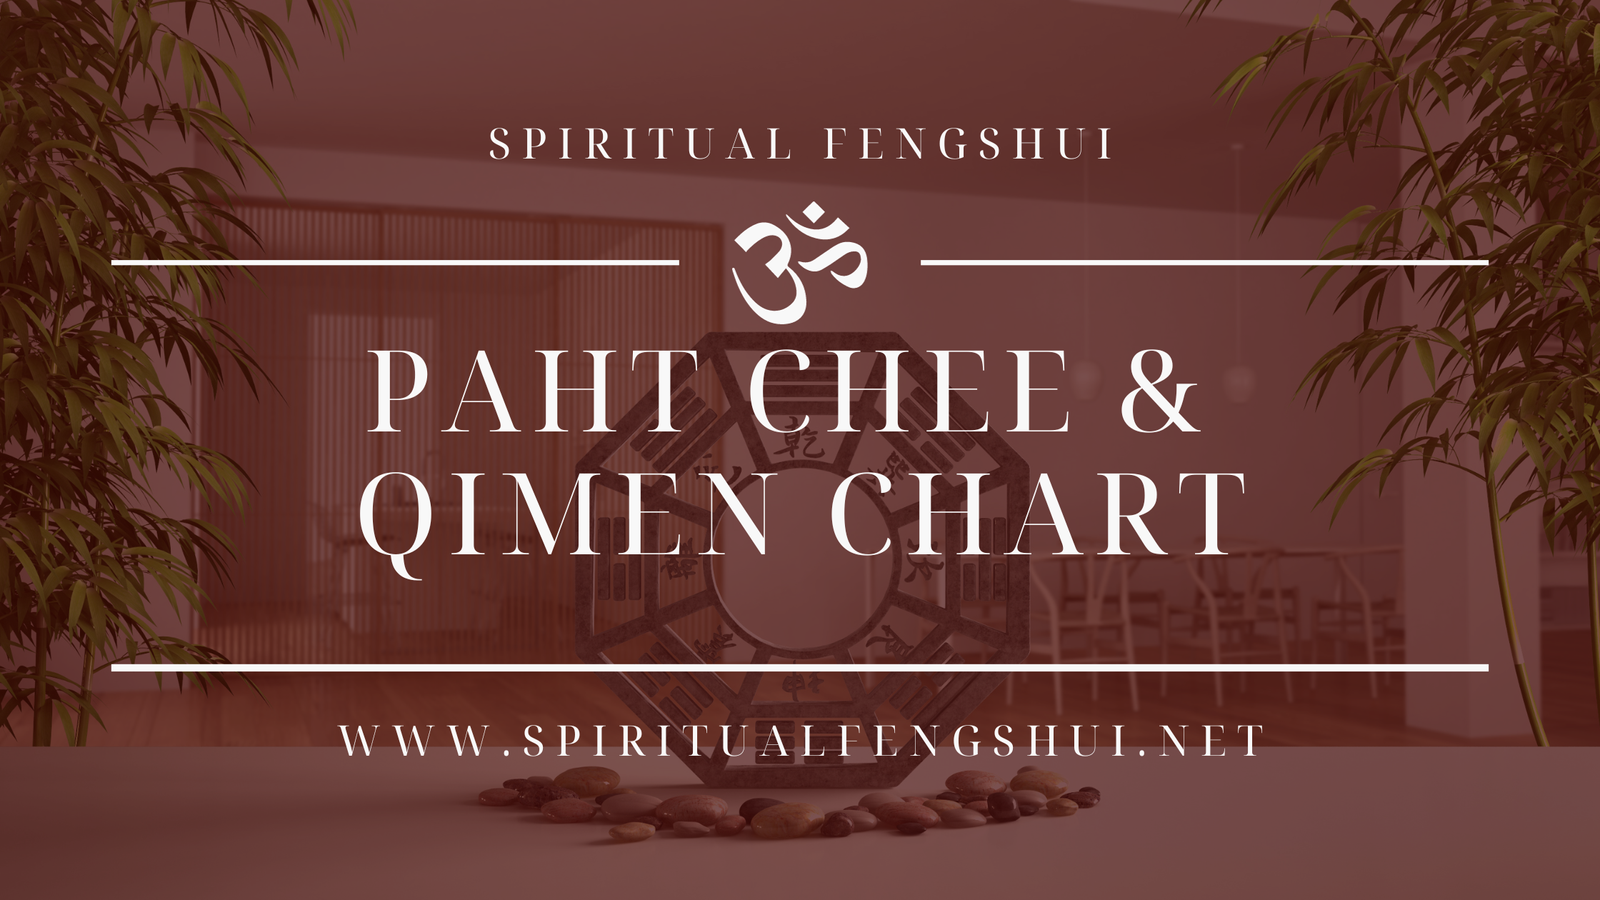 Paht Chee and Qi-men Chart